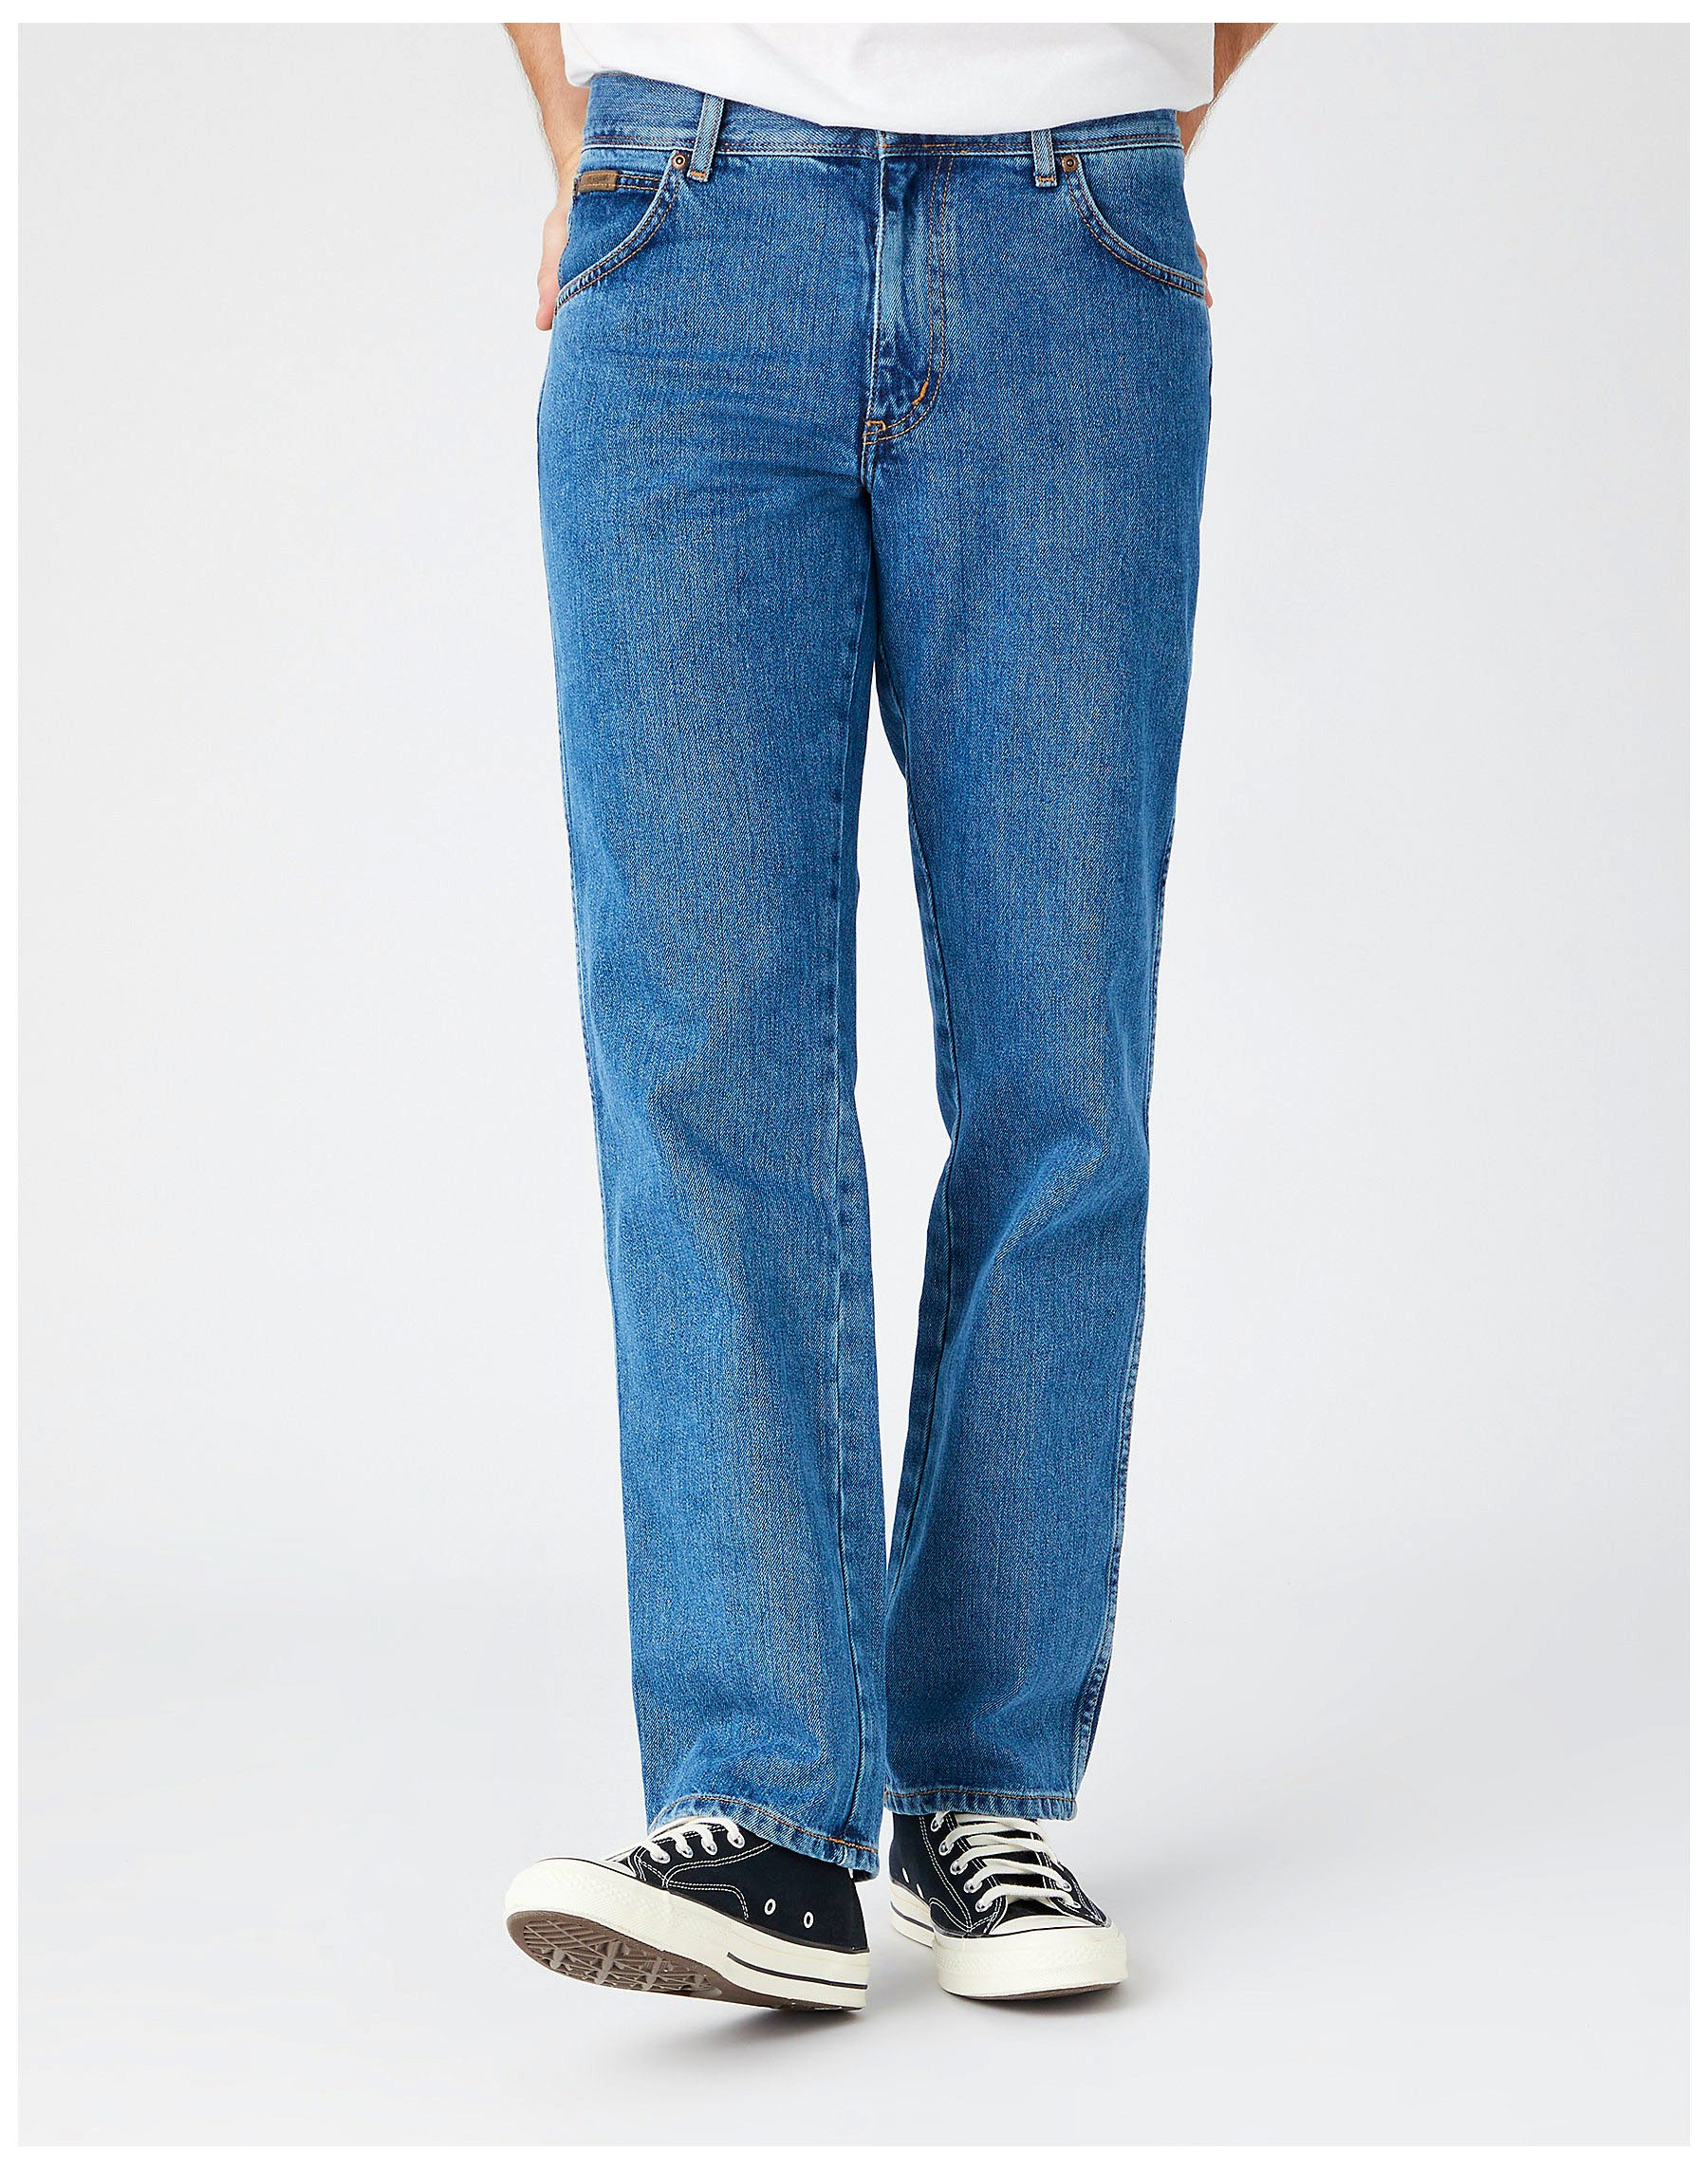 Welche Faktoren es vor dem Kauf die Wrangler jeans texas zu bewerten gibt!